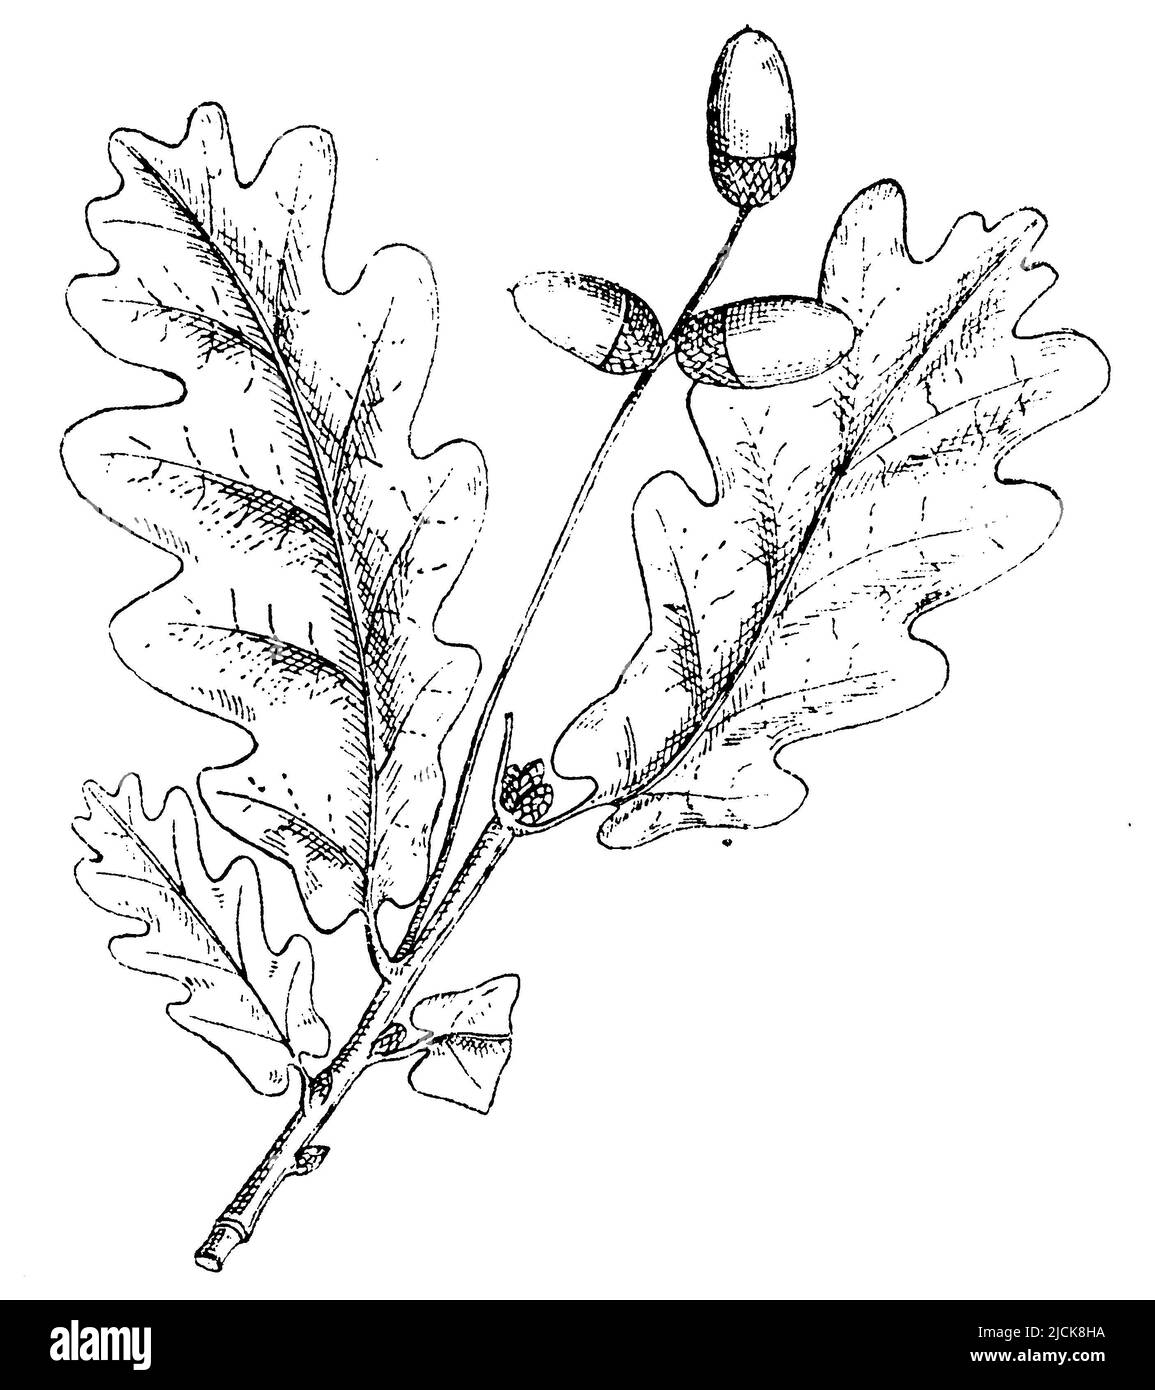 Chêne français, Quercus robur, (livre botanique, 1910), Stieleiche, chêne pédonculé Banque D'Images